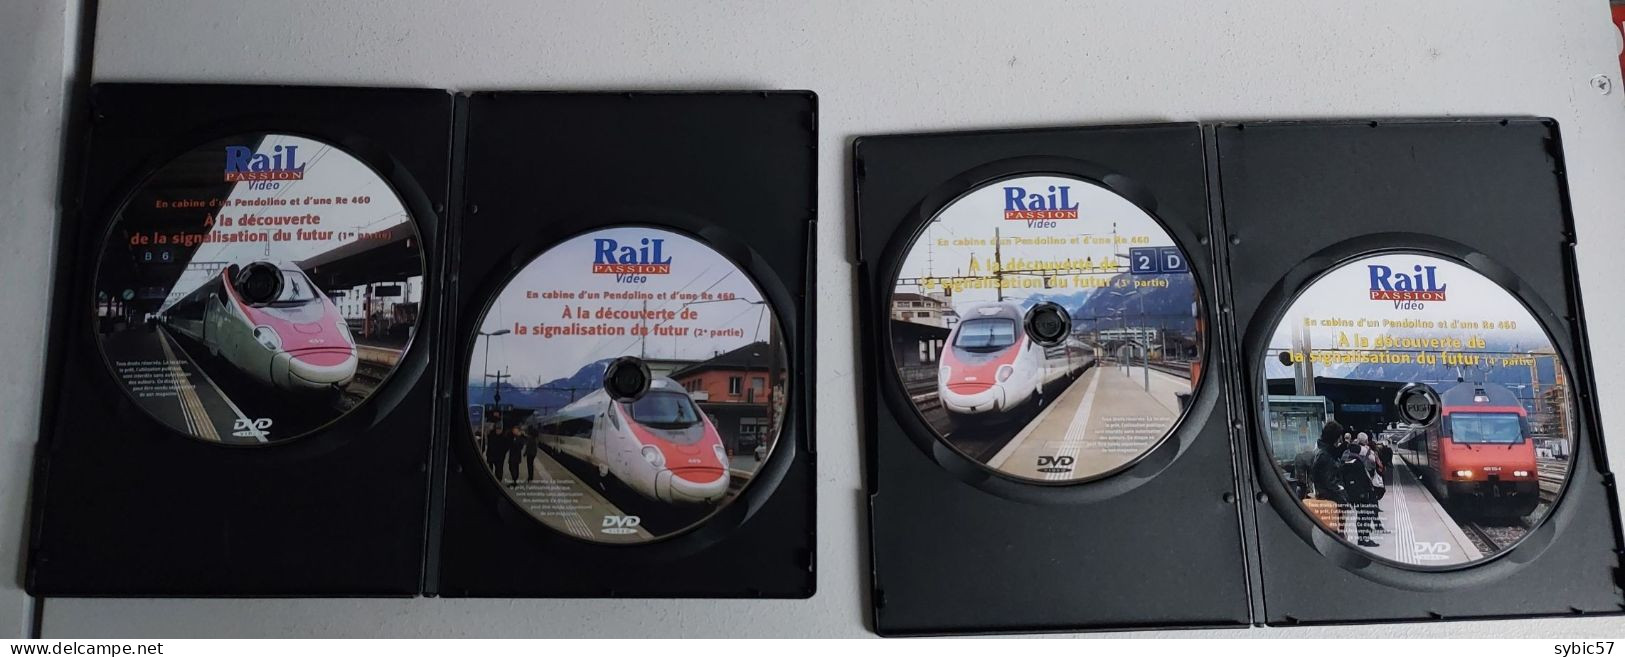 DVD Rail Passion " En Cabine D'un Pendolino Et D'une Re 460. A La Découverte De La Signalisation Du Futur " - Dokumentarfilme